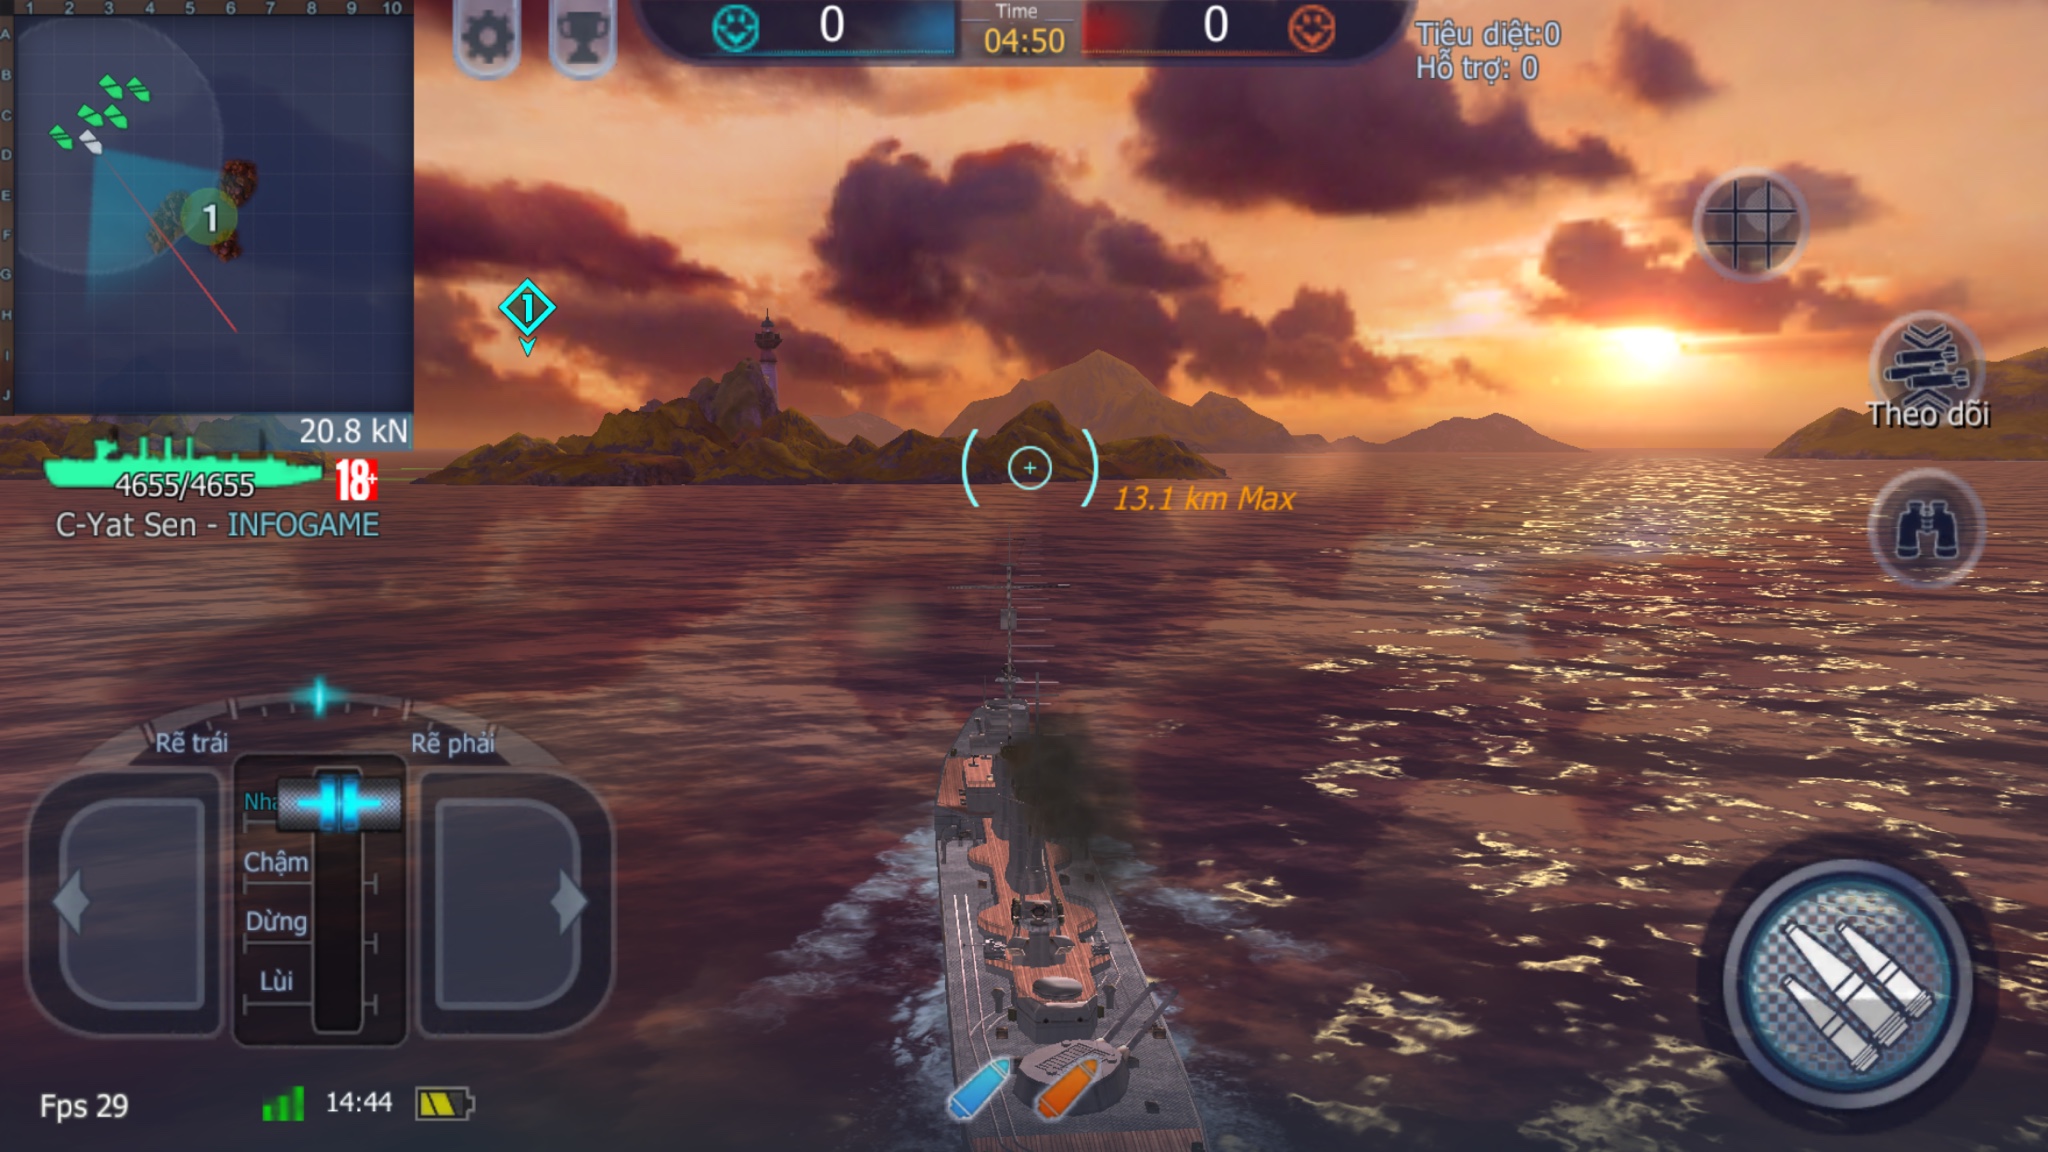 Nạp Thẻ Bit Chơi Bắn Súng Trên Biển Với Game Thủy Chiến 2